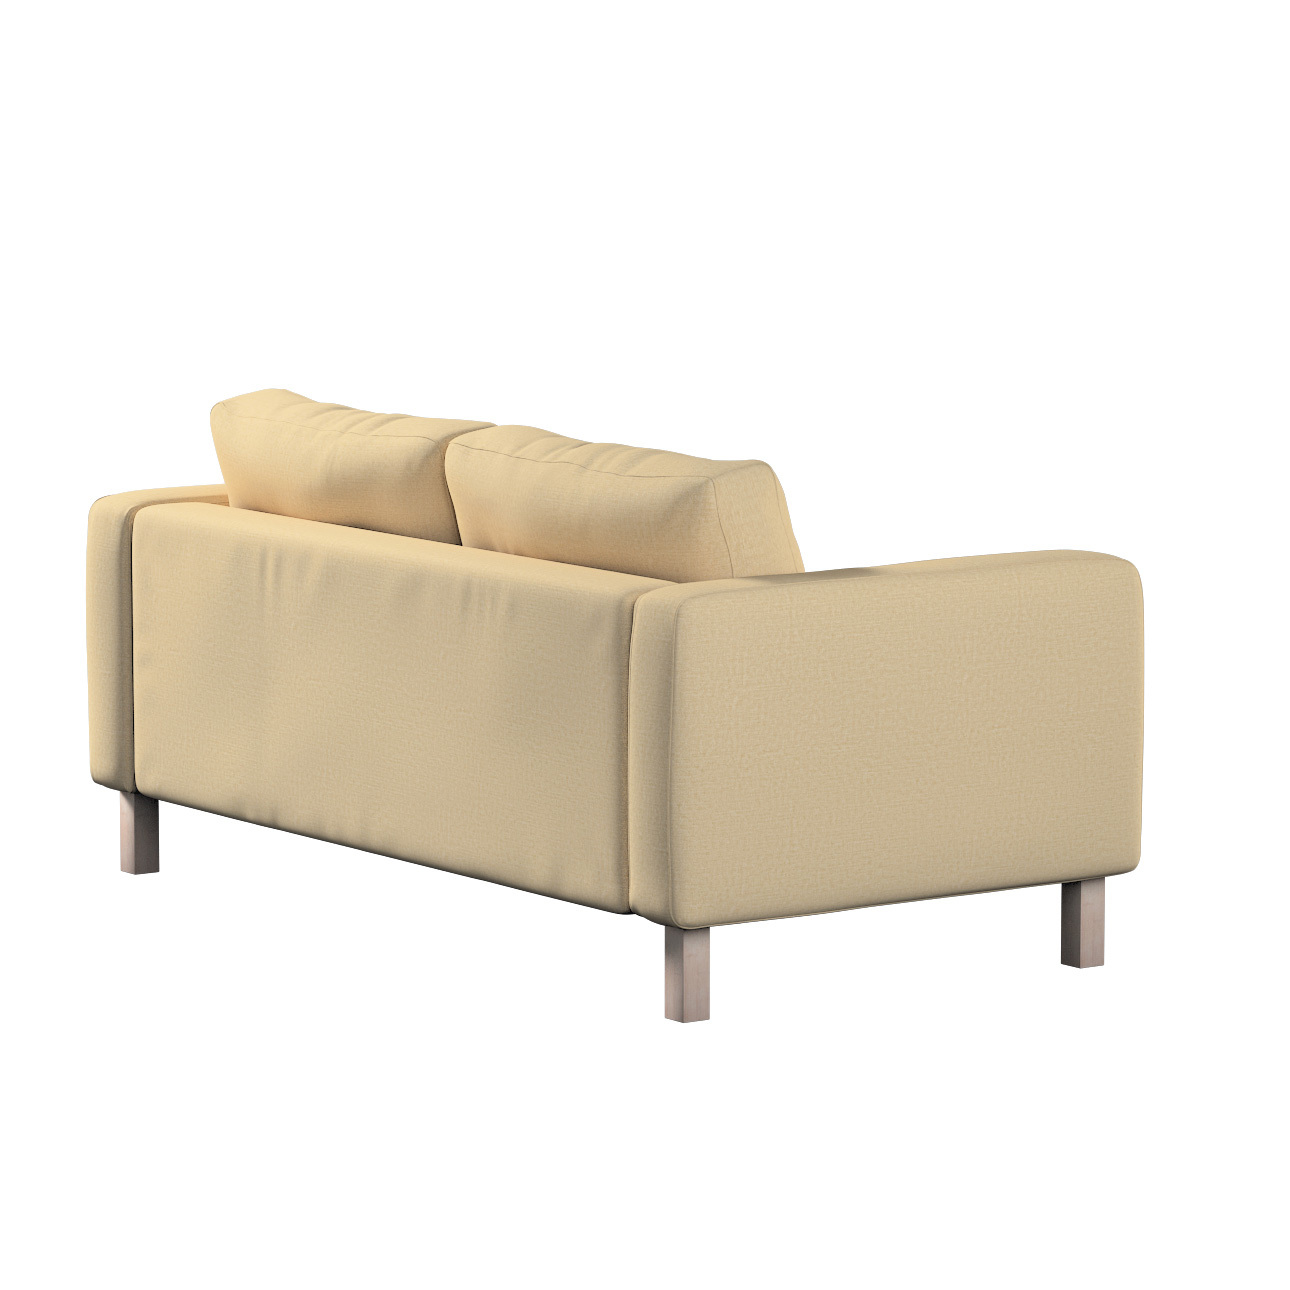 Bezug für Karlstad 2-Sitzer Sofa nicht ausklappbar, sandfarben, Sofahusse, günstig online kaufen